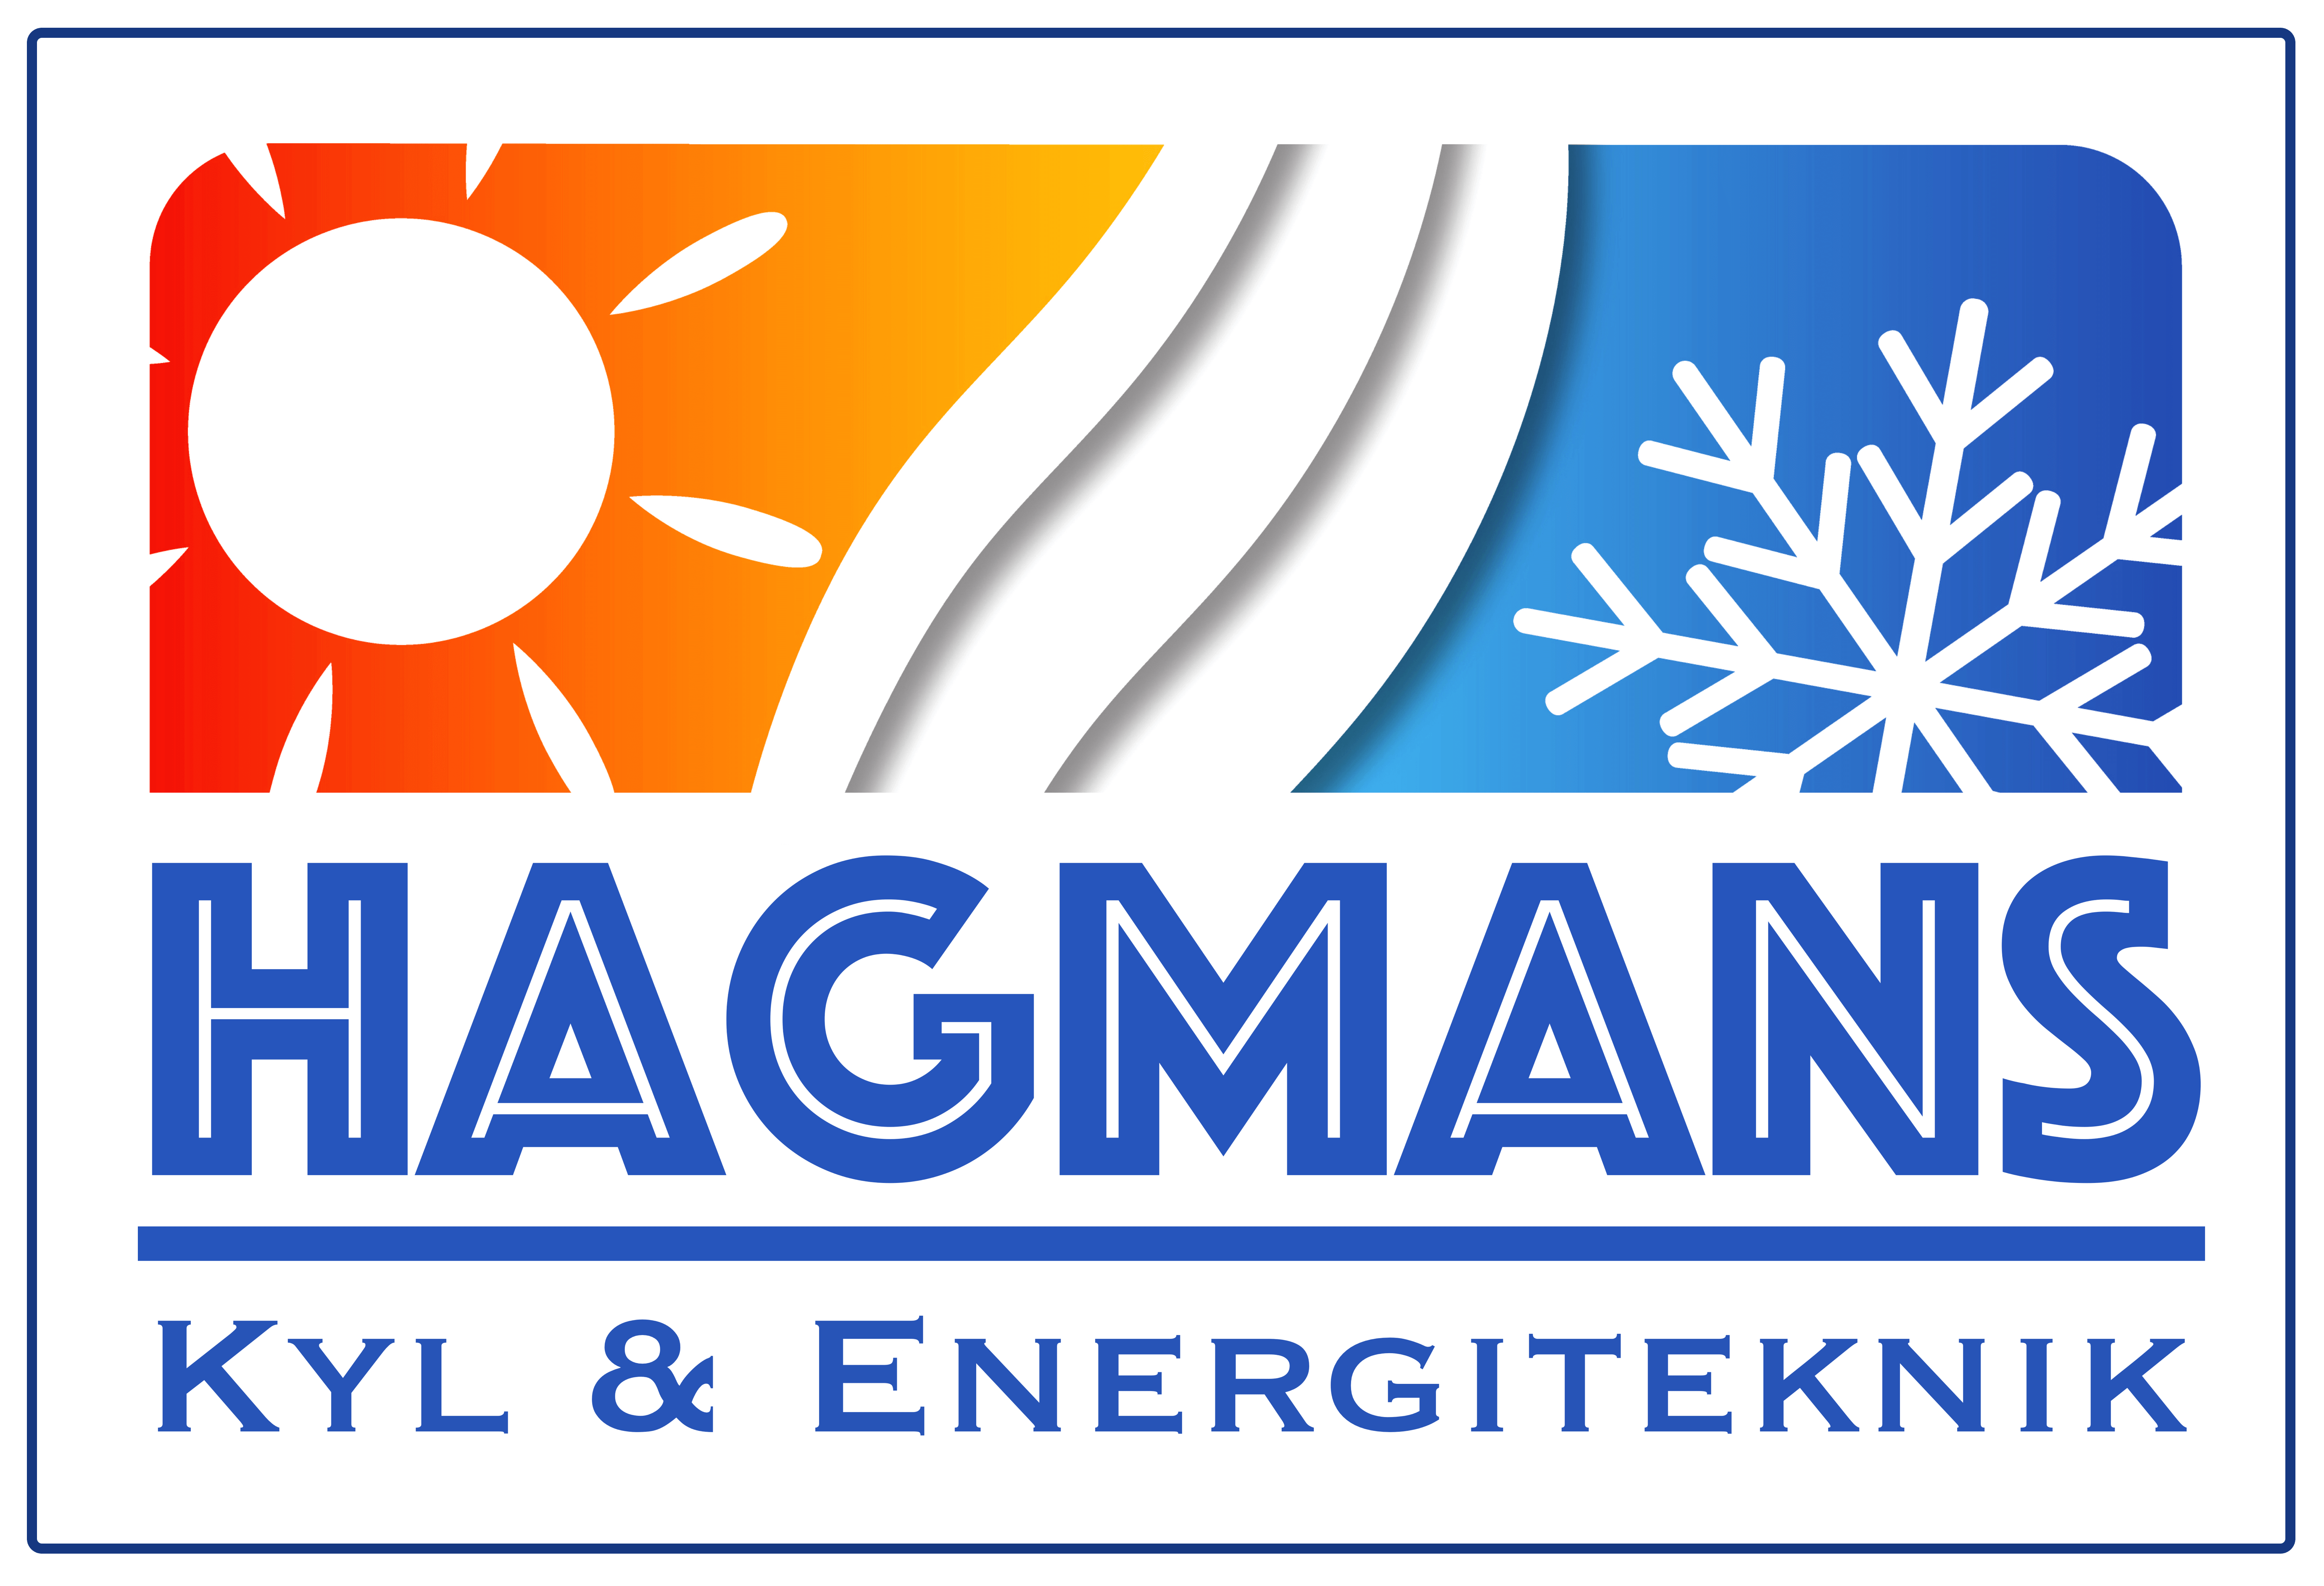 Hagmans Kyl och Energiteknik